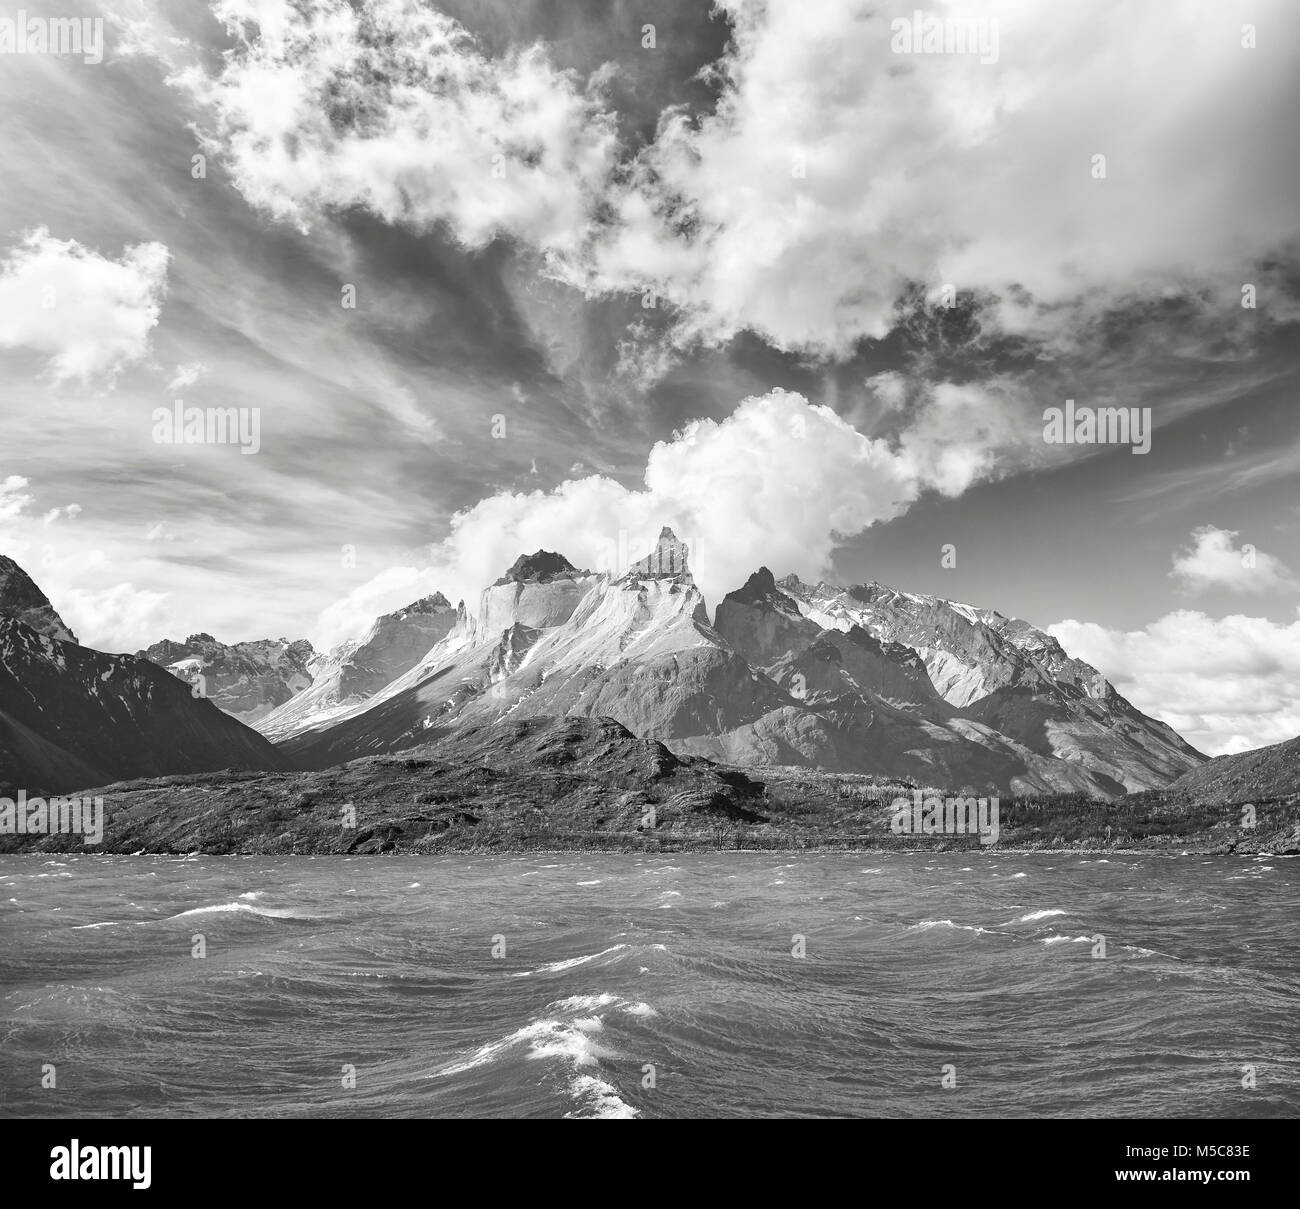 Schwarz-weiß Bild von den Pehoe See und Los Cuernos (Hörner) im Torres del Paine Nationalpark, Chile. Stockfoto